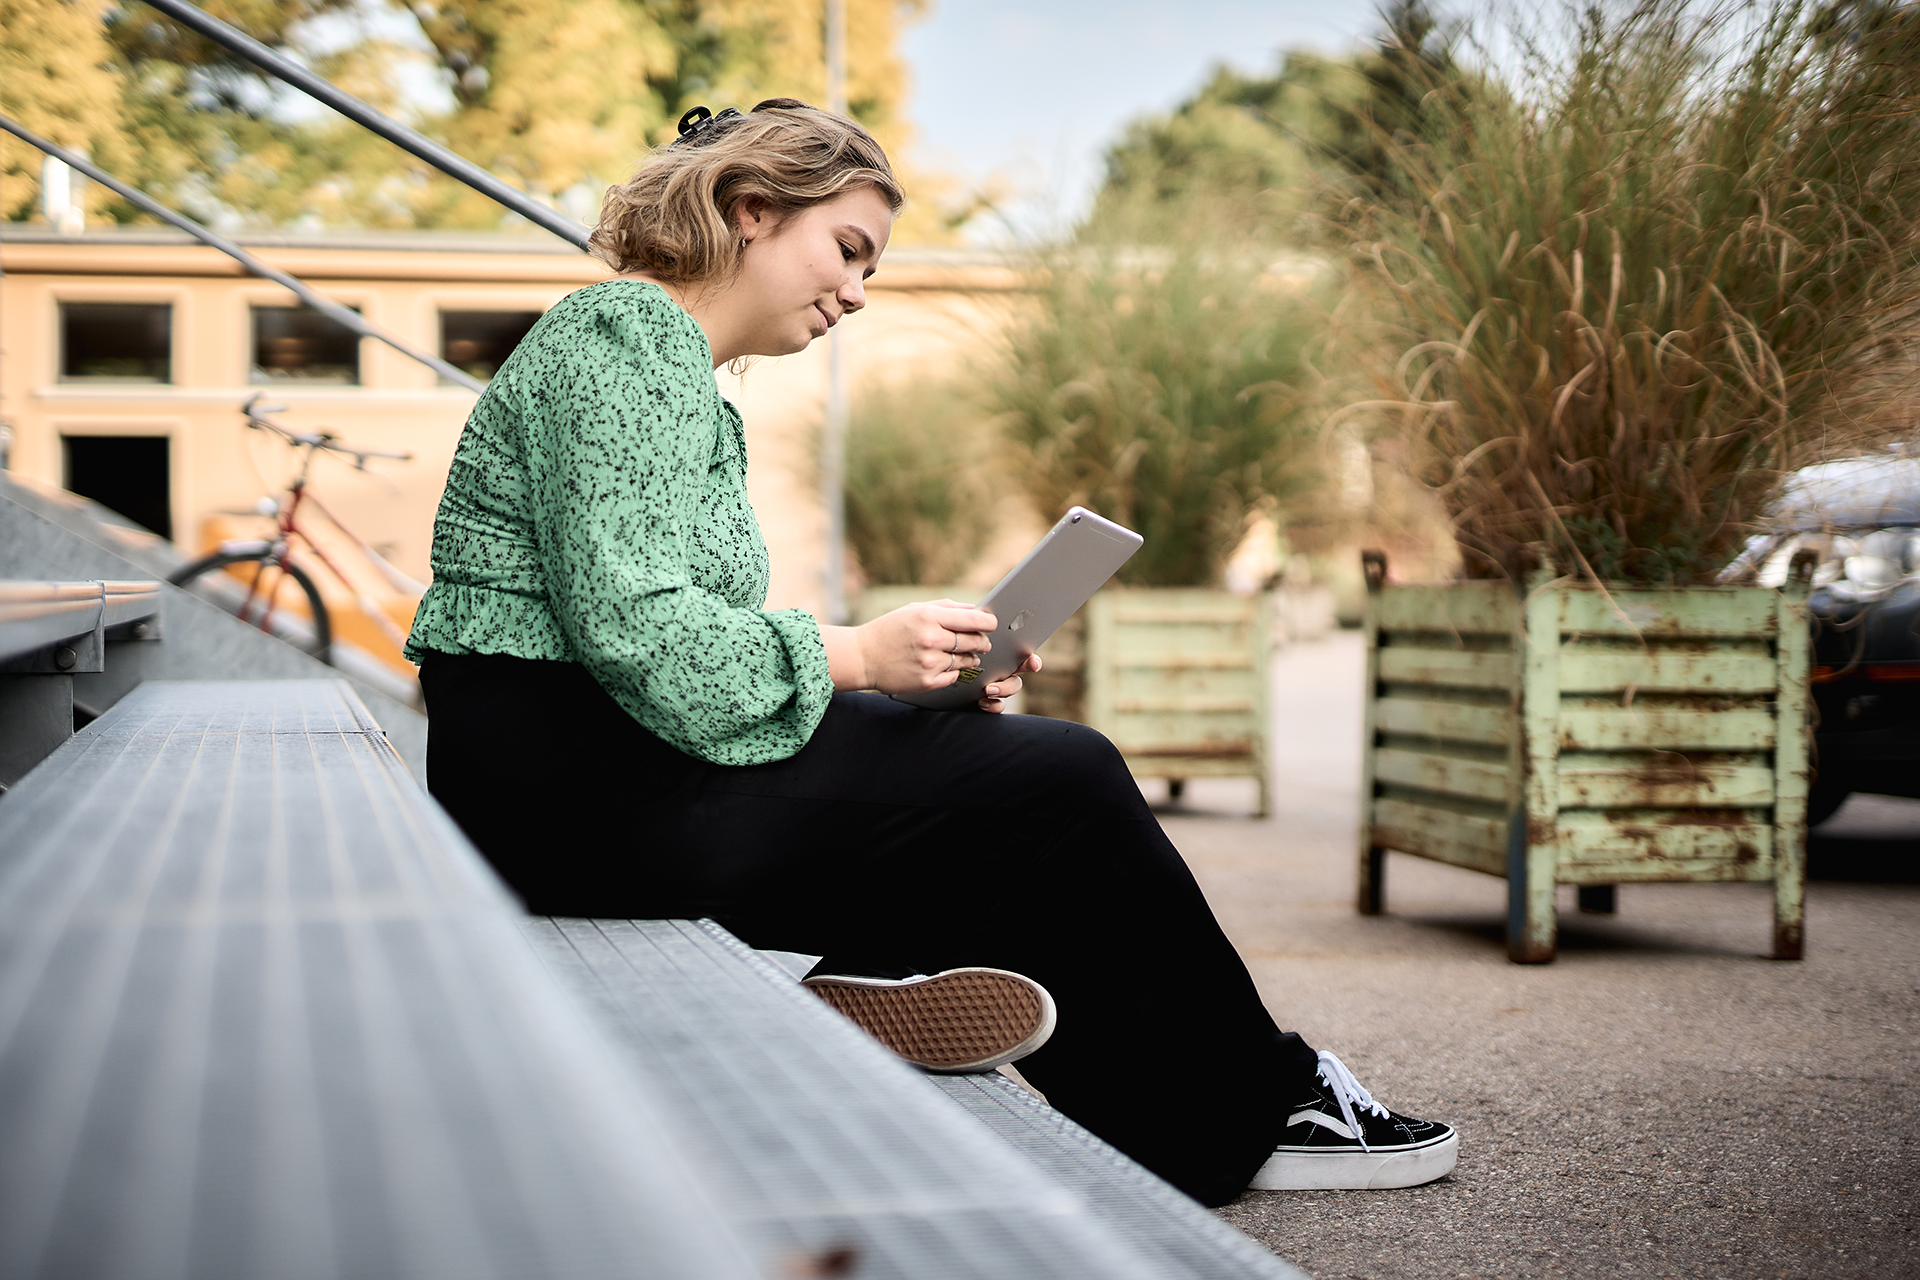 Junge Frau, die auf einer Treppe sitzt und auf einem iPad ein Kunsthallen-Angebot nutzt